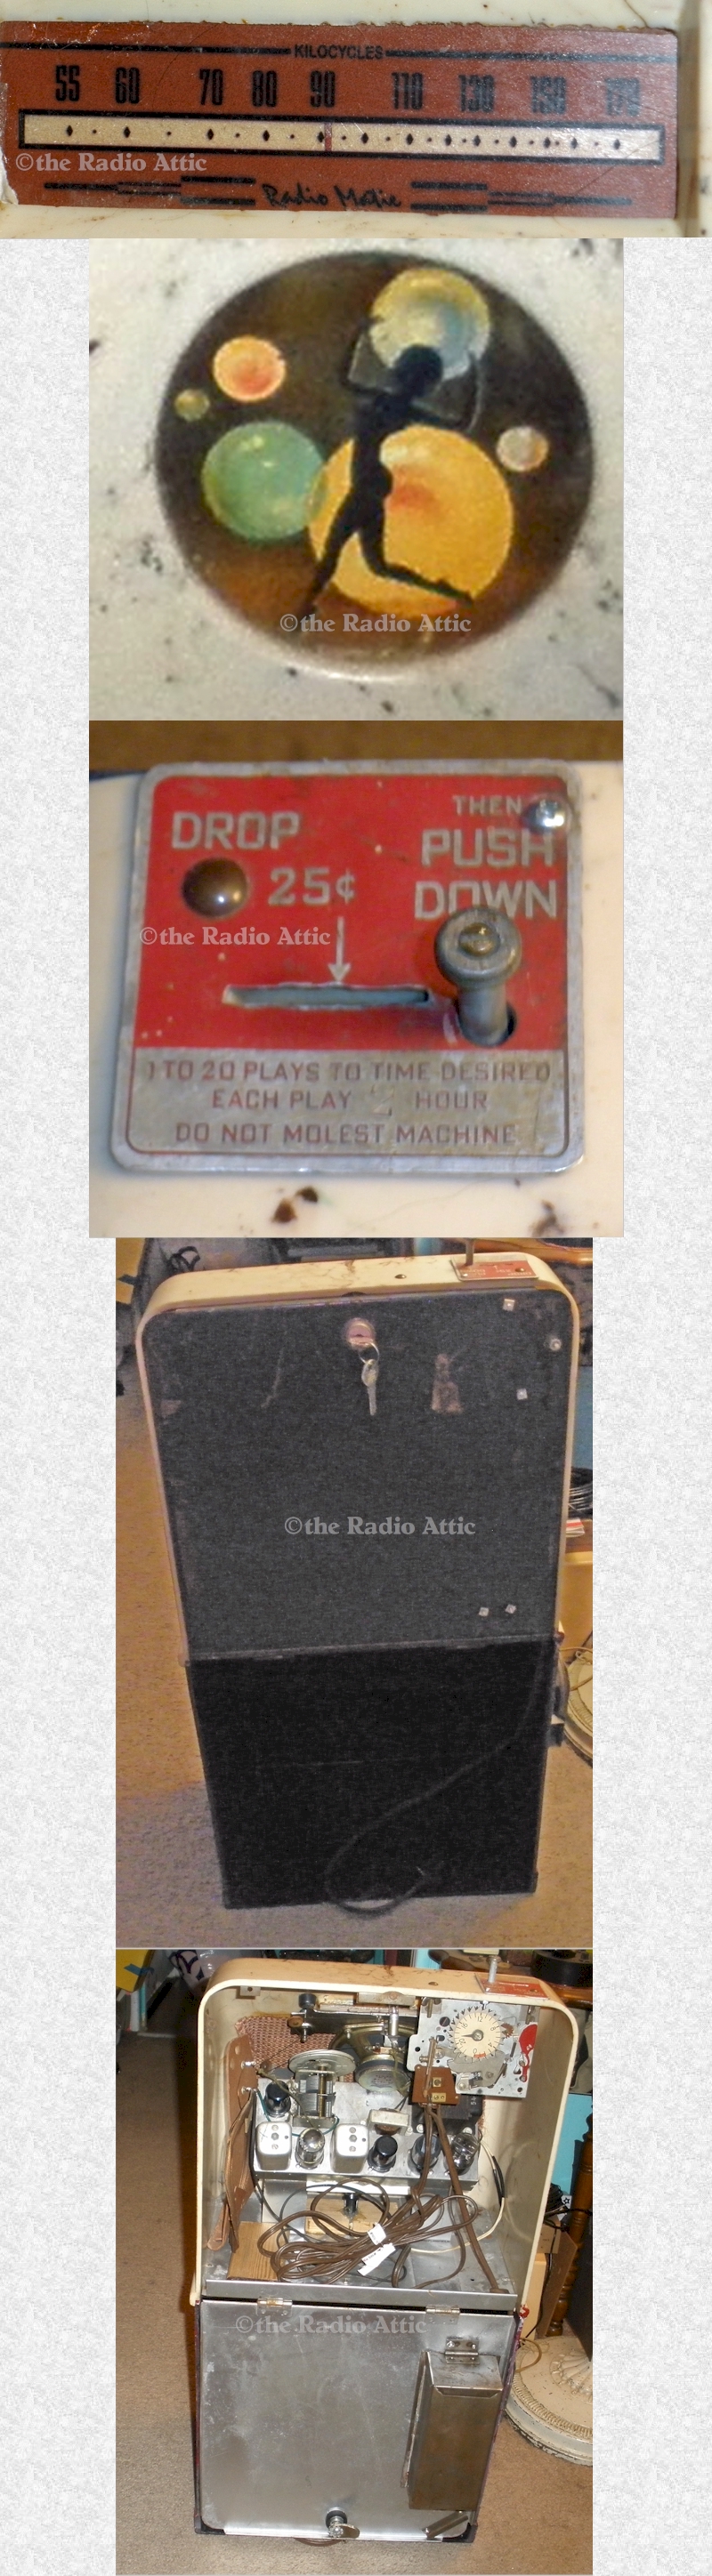 Radio Matie Coin-Op Radio (1947)